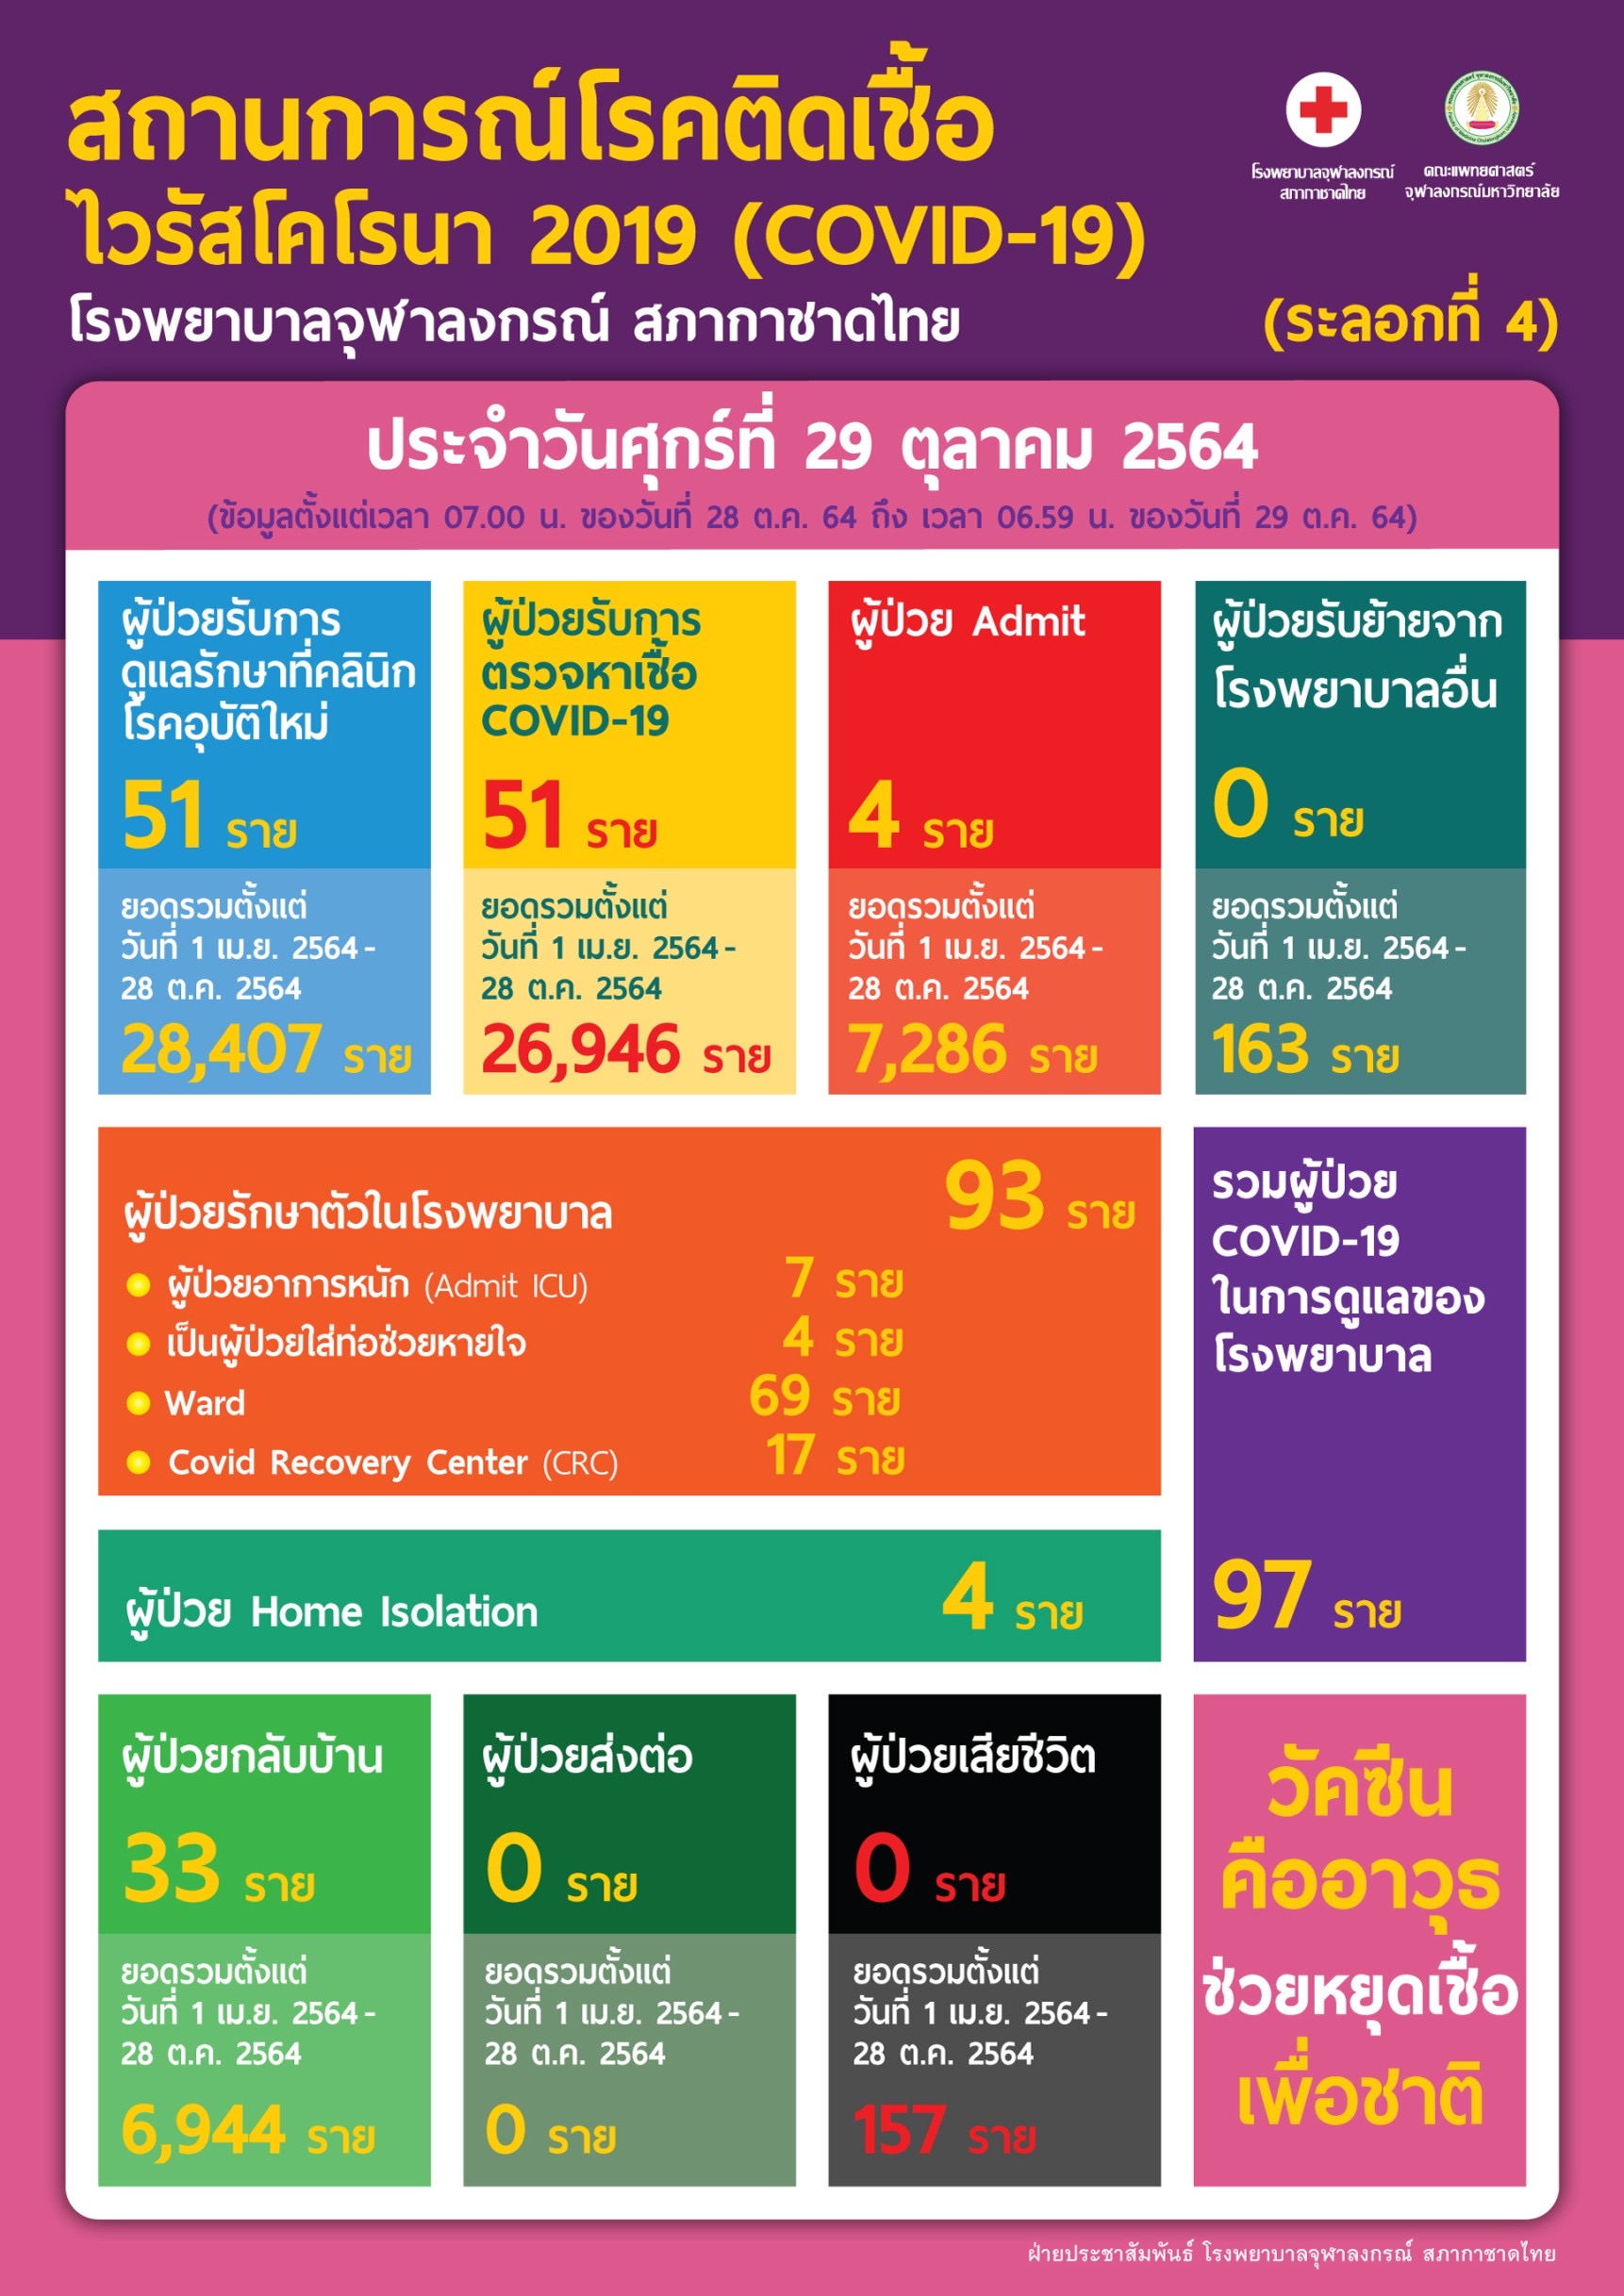 สถานการณ์โรคติดเชื้อไวรัสโคโรนา 2019 (COVID-19) (ระลอกที่ 4) โรงพยาบาลจุฬาลงกรณ์ สภากาชาดไทย ประจำวันศุกร์ที่ 29 ตุลาคม 2564